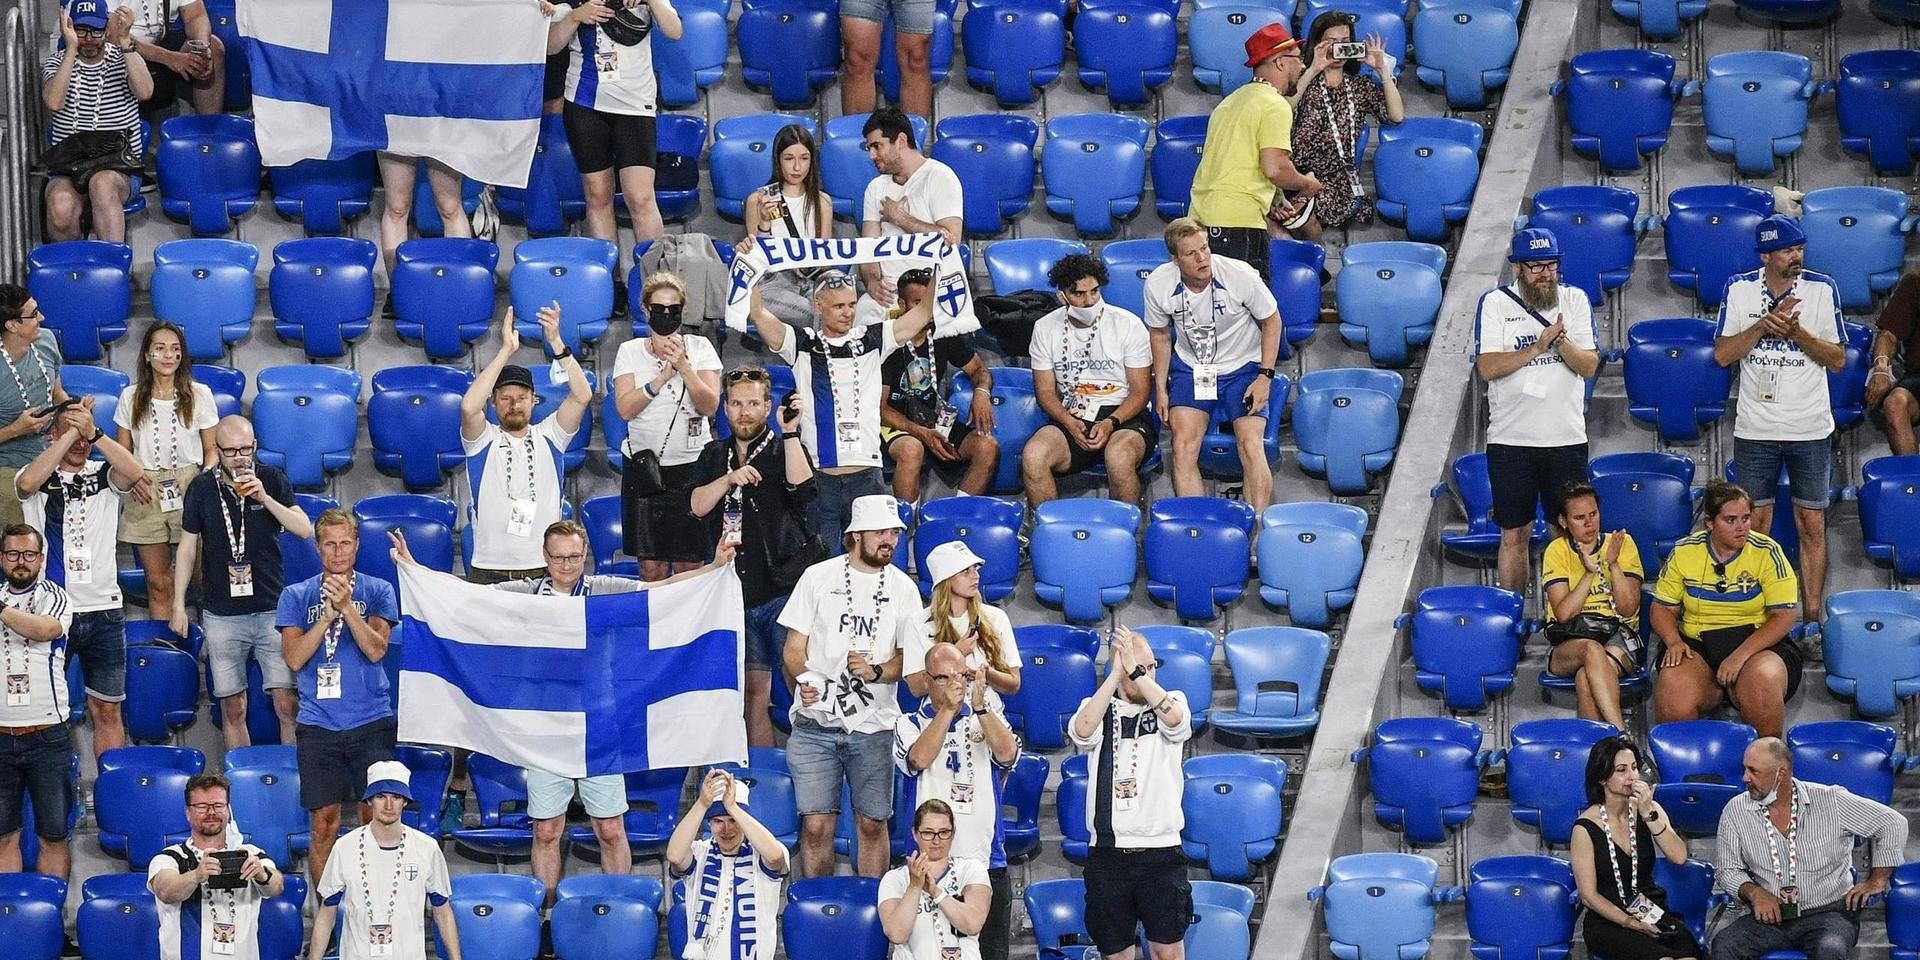 Det var en hel del finländska supportrar i S:t Petersburg.